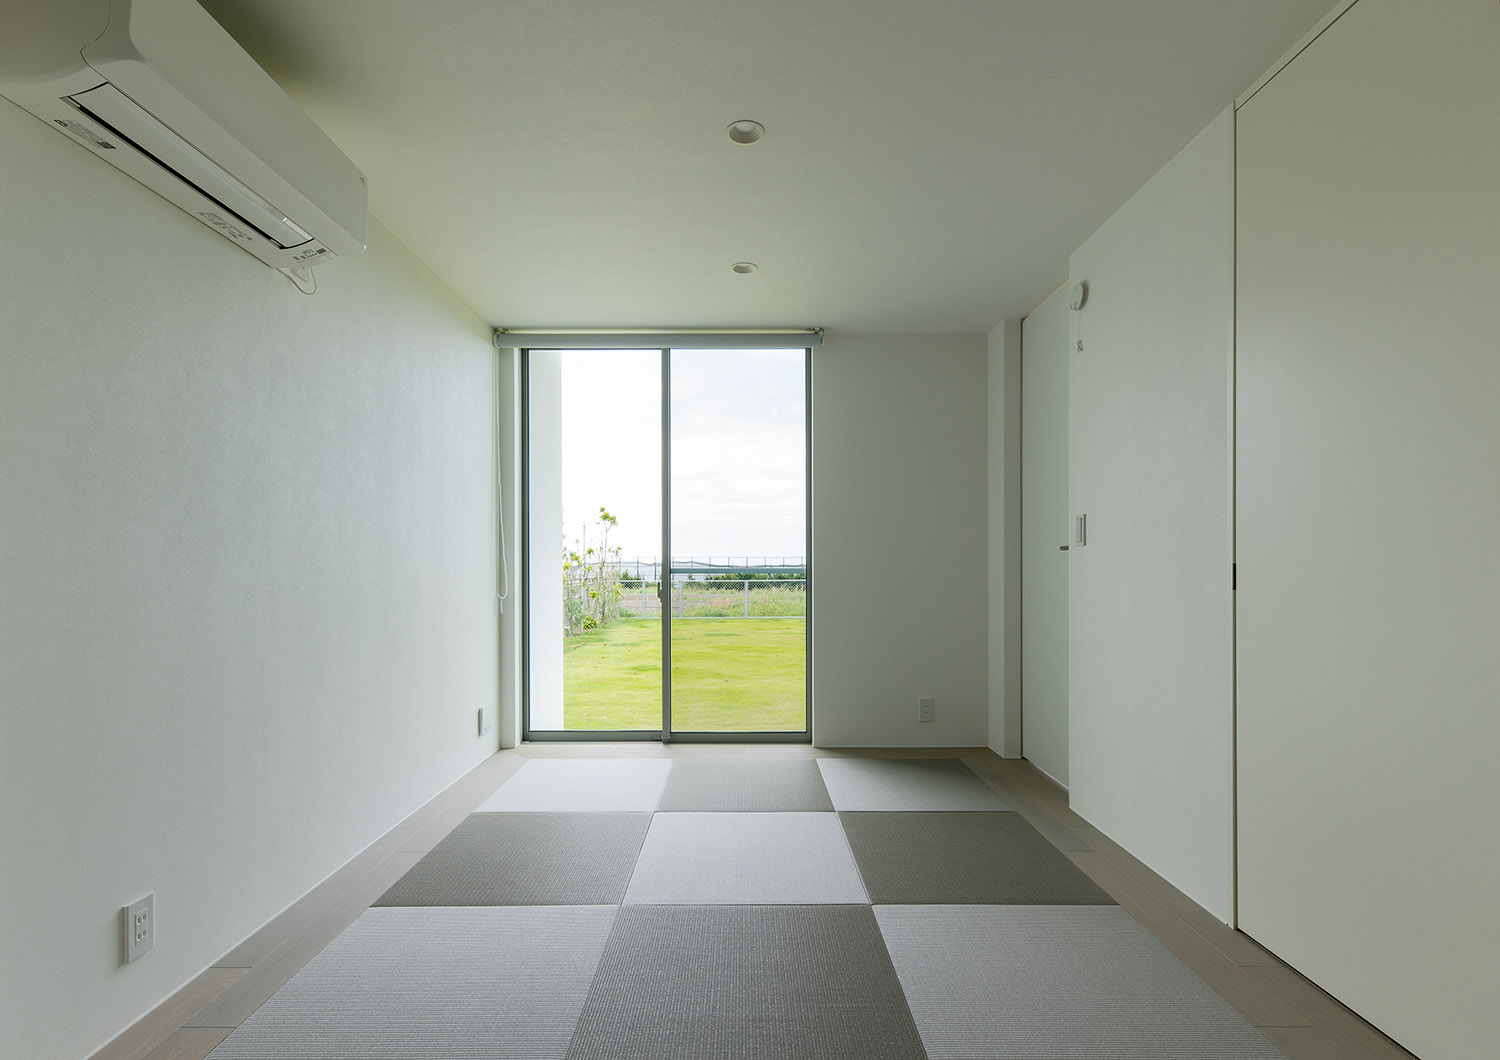 芝生が見える窓が取り付けられた琉球畳の和室・デザイン住宅